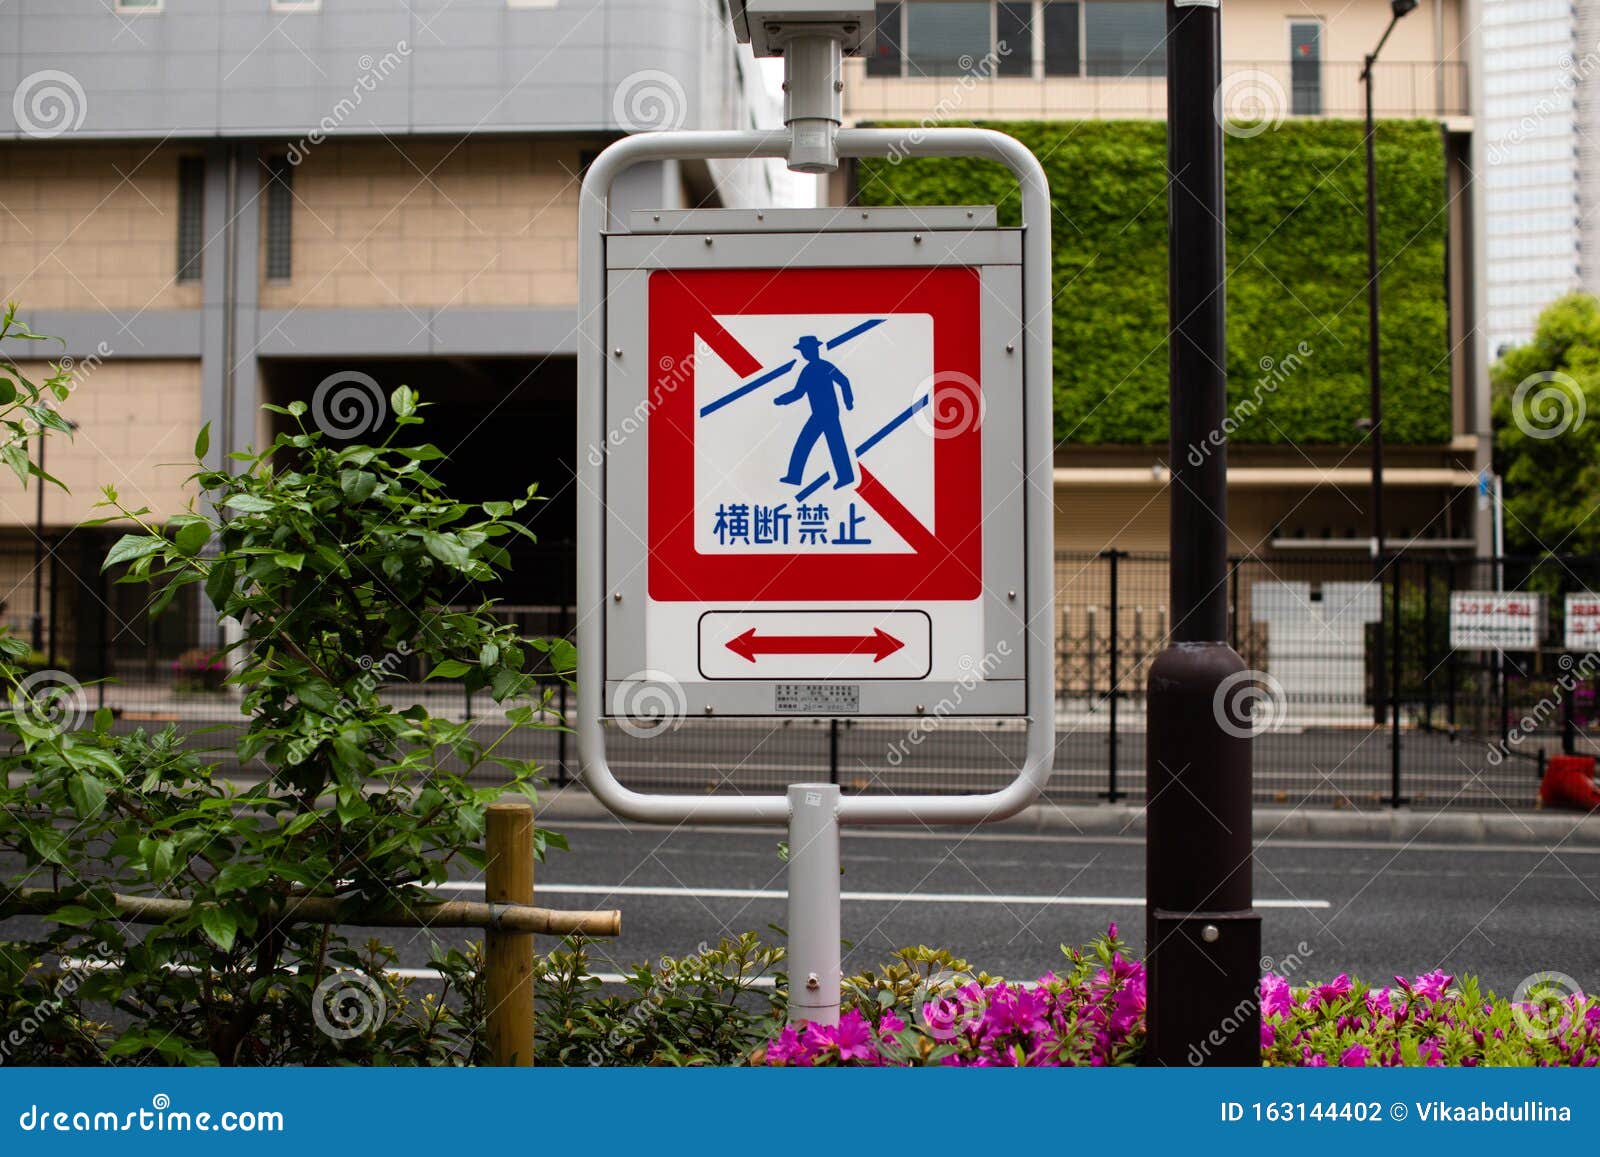 Nao Atravesse A Placa De Transito Em Toquio Traducao Japonesa Do Japones E Proibida A Travessia Foto De Stock Imagem De Cruz Regua